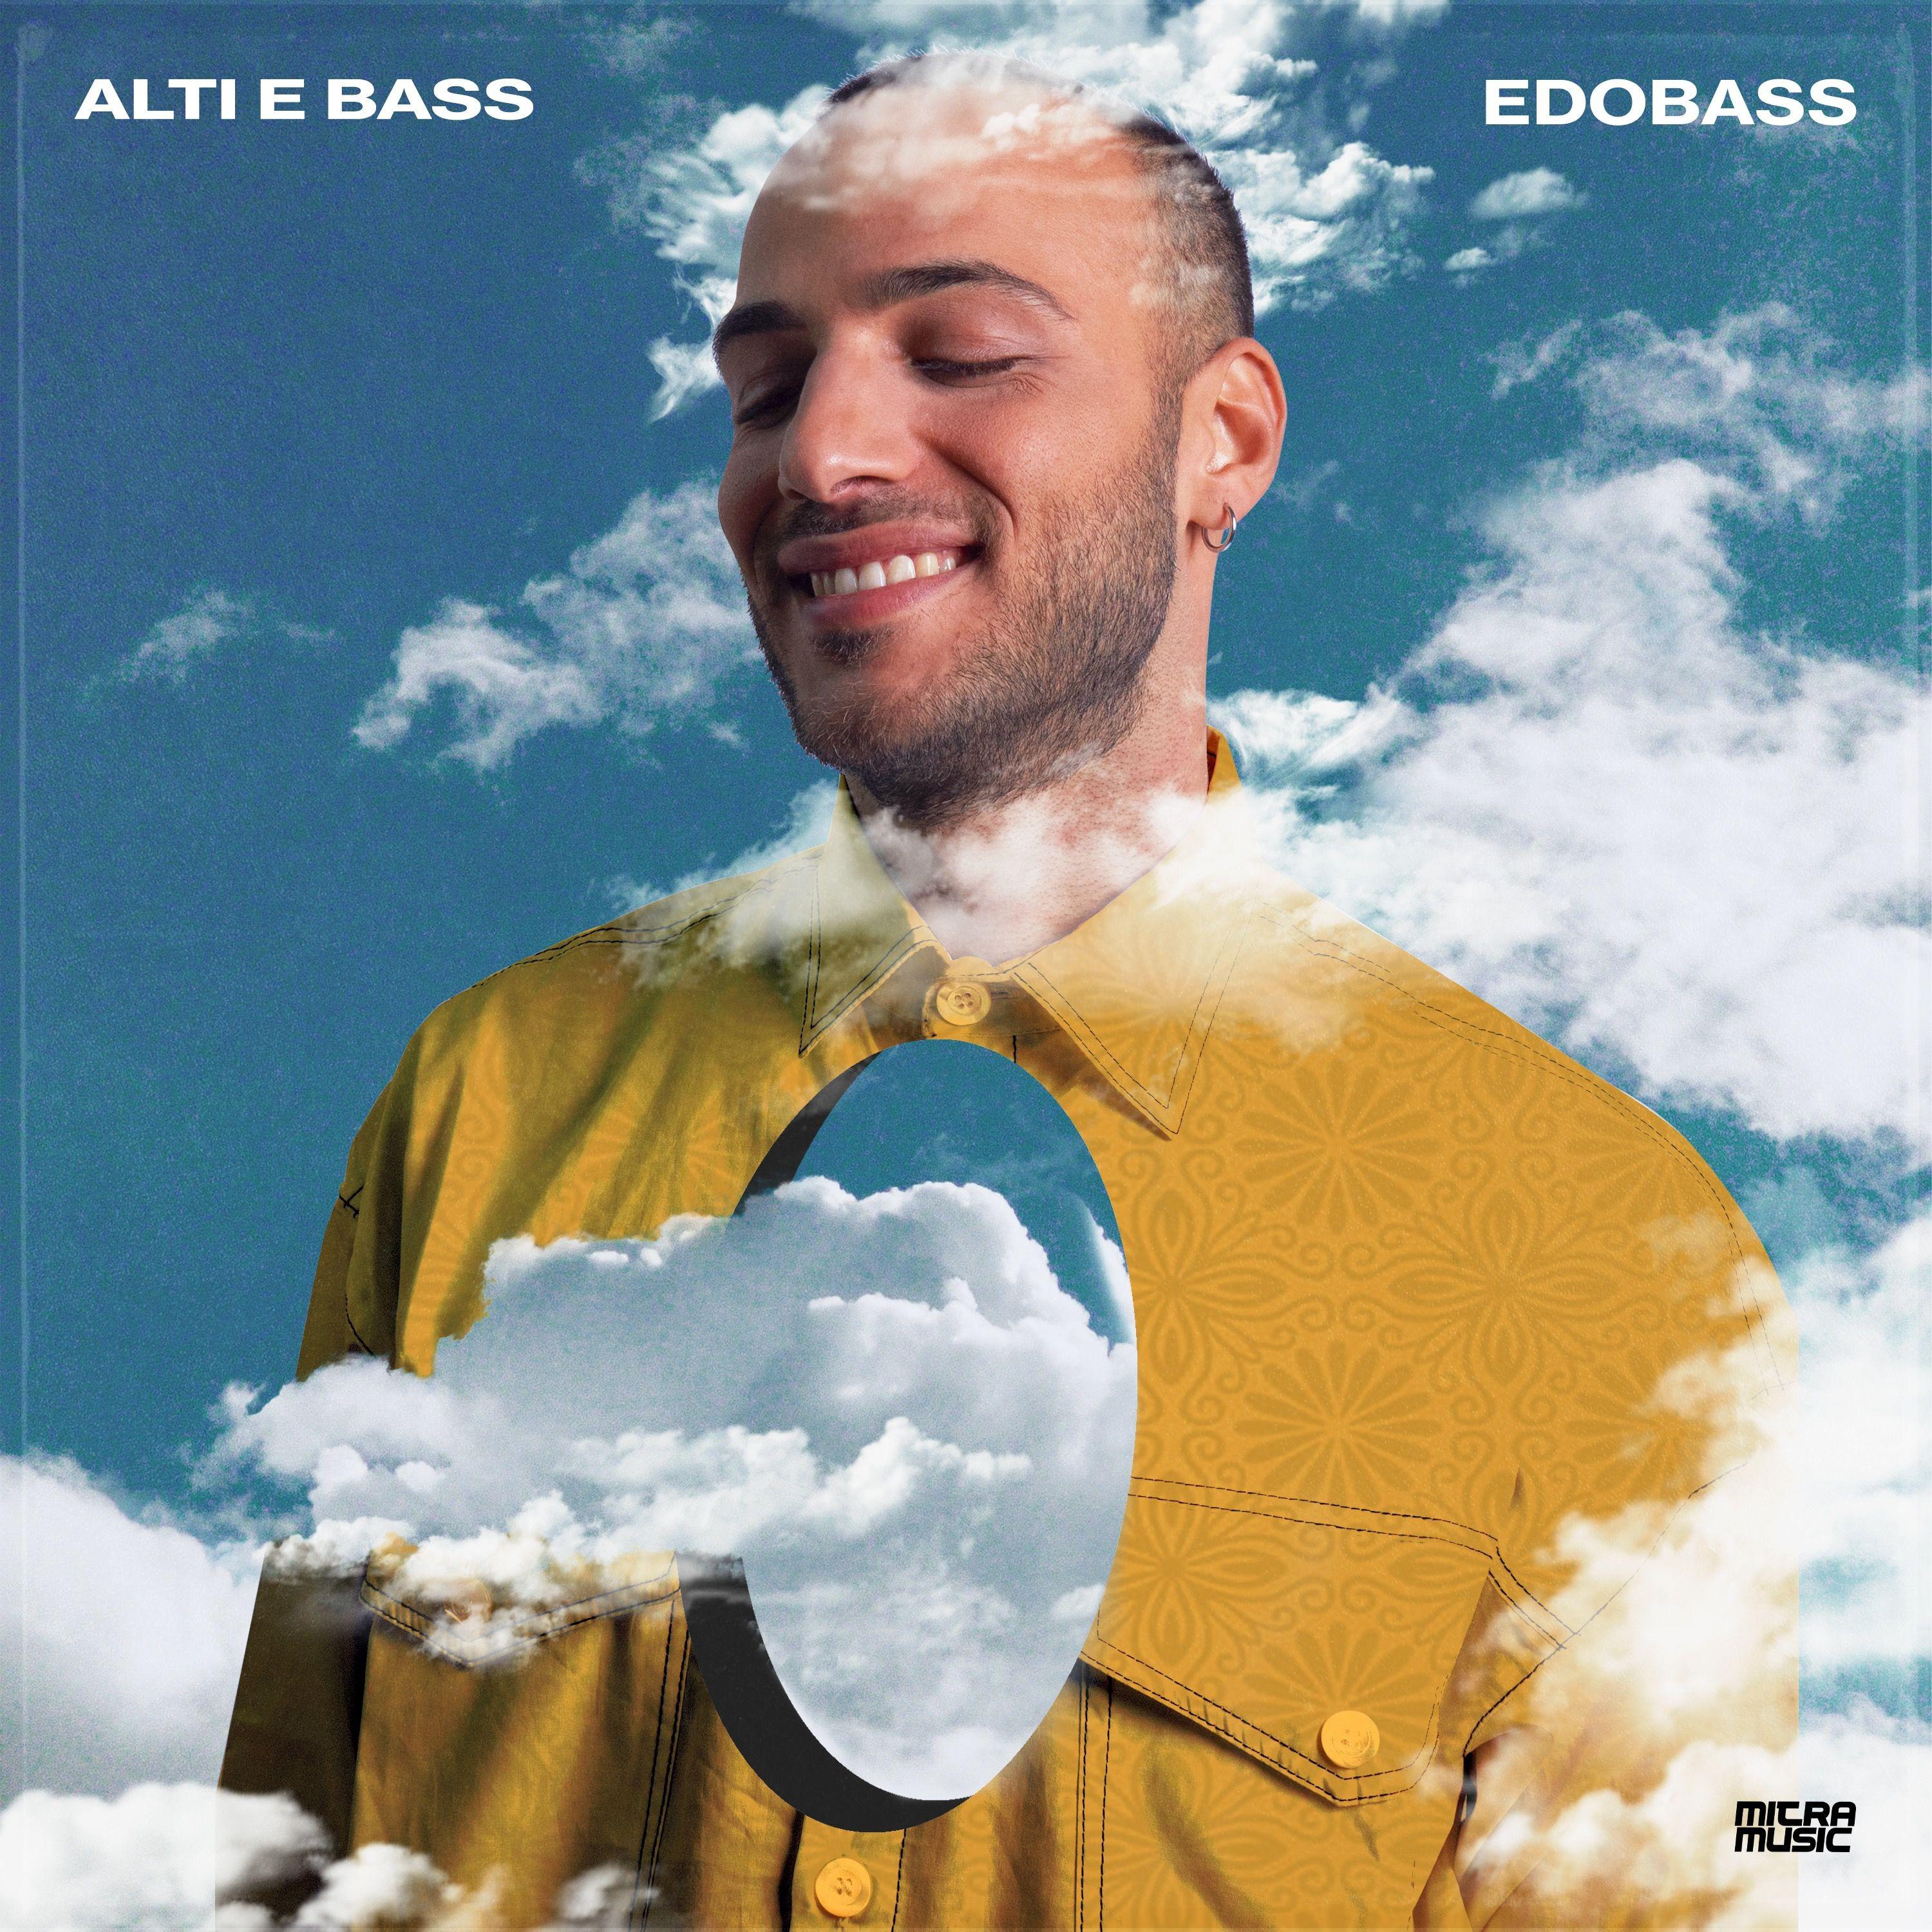 EdoBass - Ne vale la pena